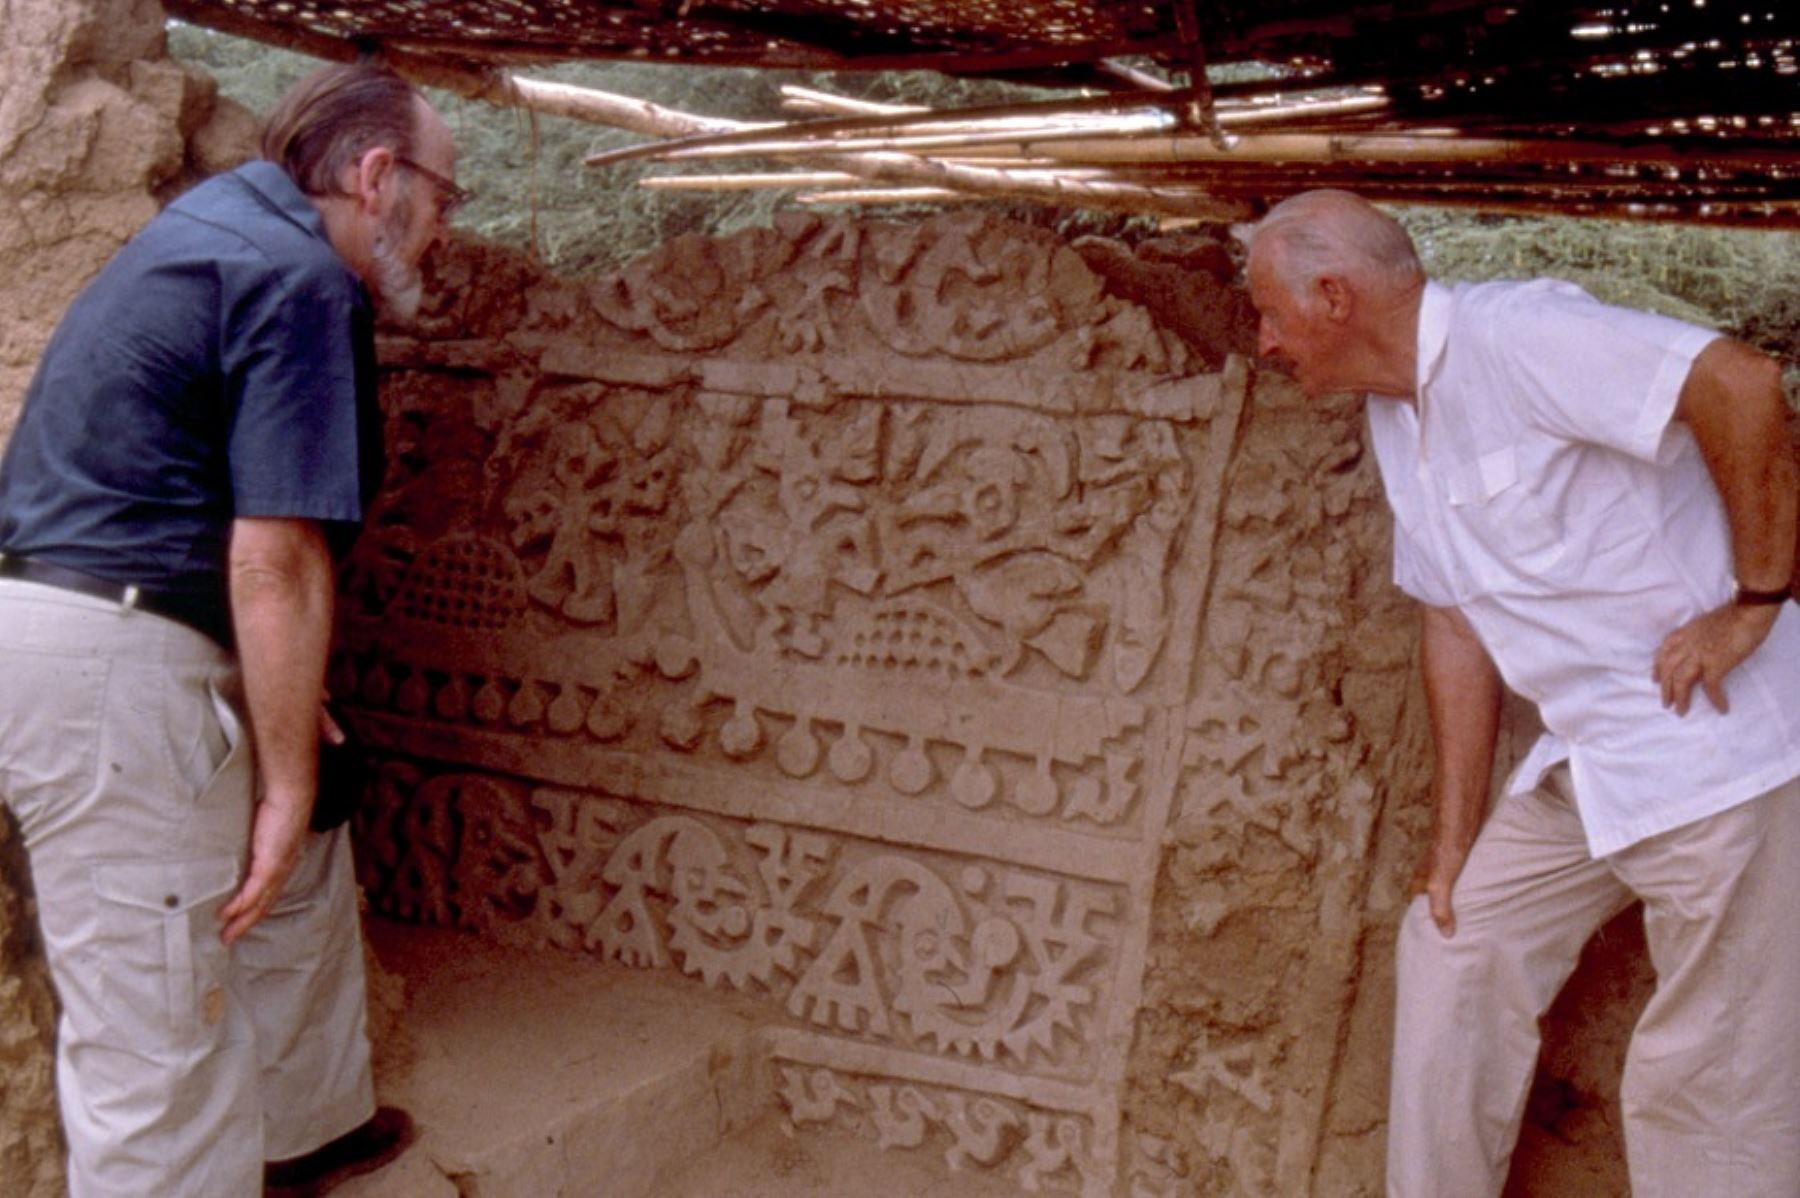 Después de 40 años, Thor Heyerdahl retornó al Perú y dirigió, entre 1988 y 1992, excavaciones arqueológicas en el complejo de pirámides “La Raya”, ubicado a las afueras de Túcume, en la región Lambayeque. En el lugar, encontraron 26 construcciones de formas piramidales construidas con bloques de adobe. Fotos: Museo Kon-Tiki de Noruega.